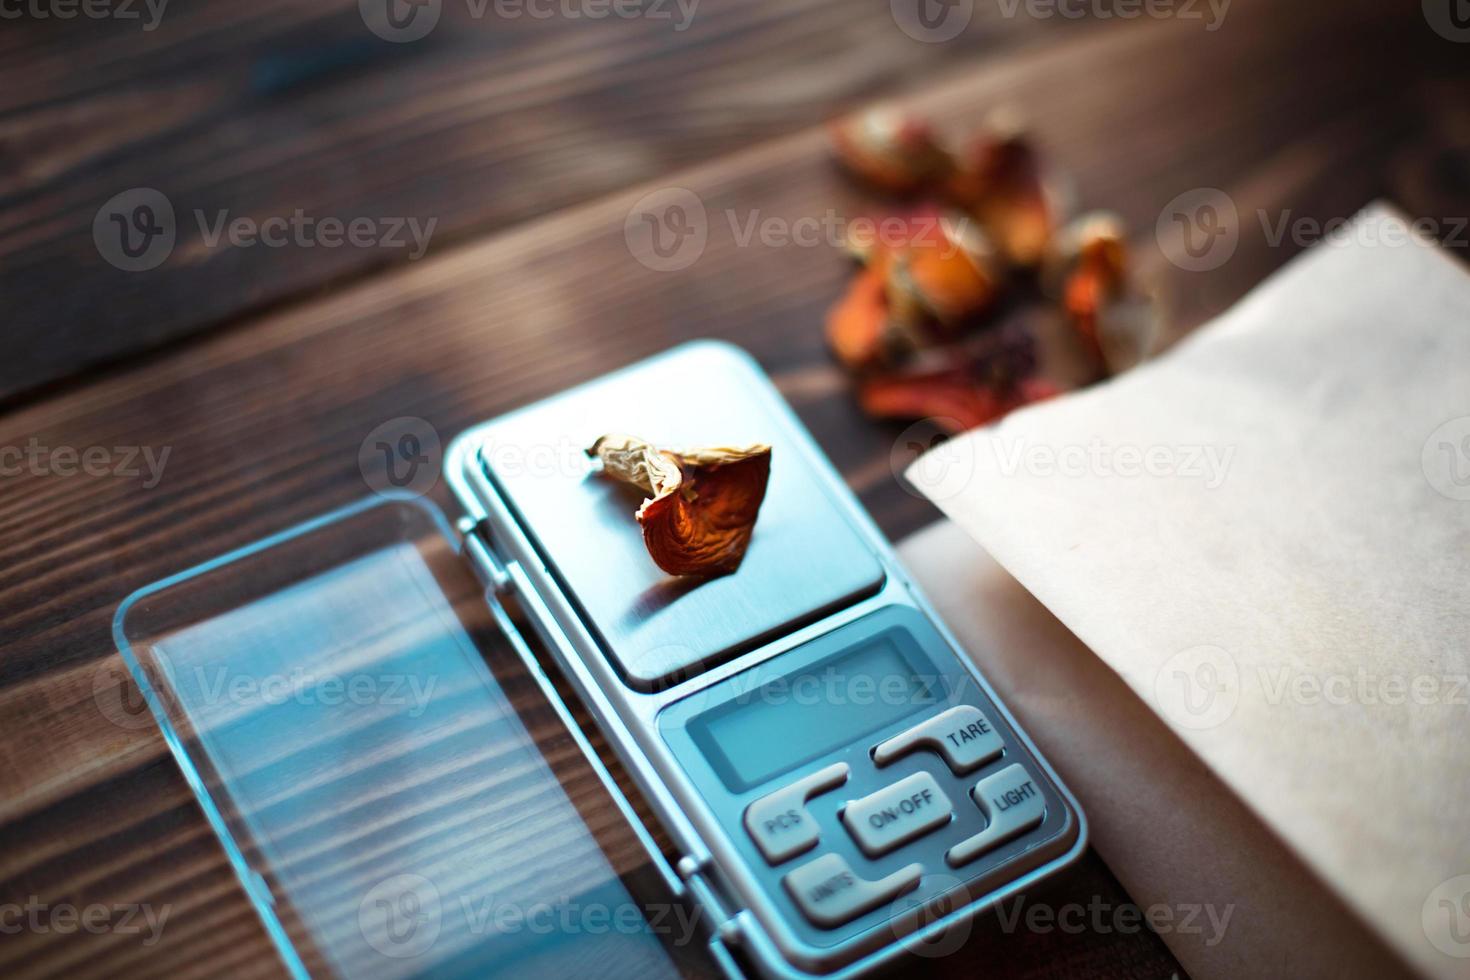 morceaux séchés d'agaric de mouche aux champignons sur table avec des écailles. mesure de la microdose, microgramme de substance narcotique thérapeutique psychédélique dans l'amanita muscaria vénéneuse. microdosage, psychotrope photo